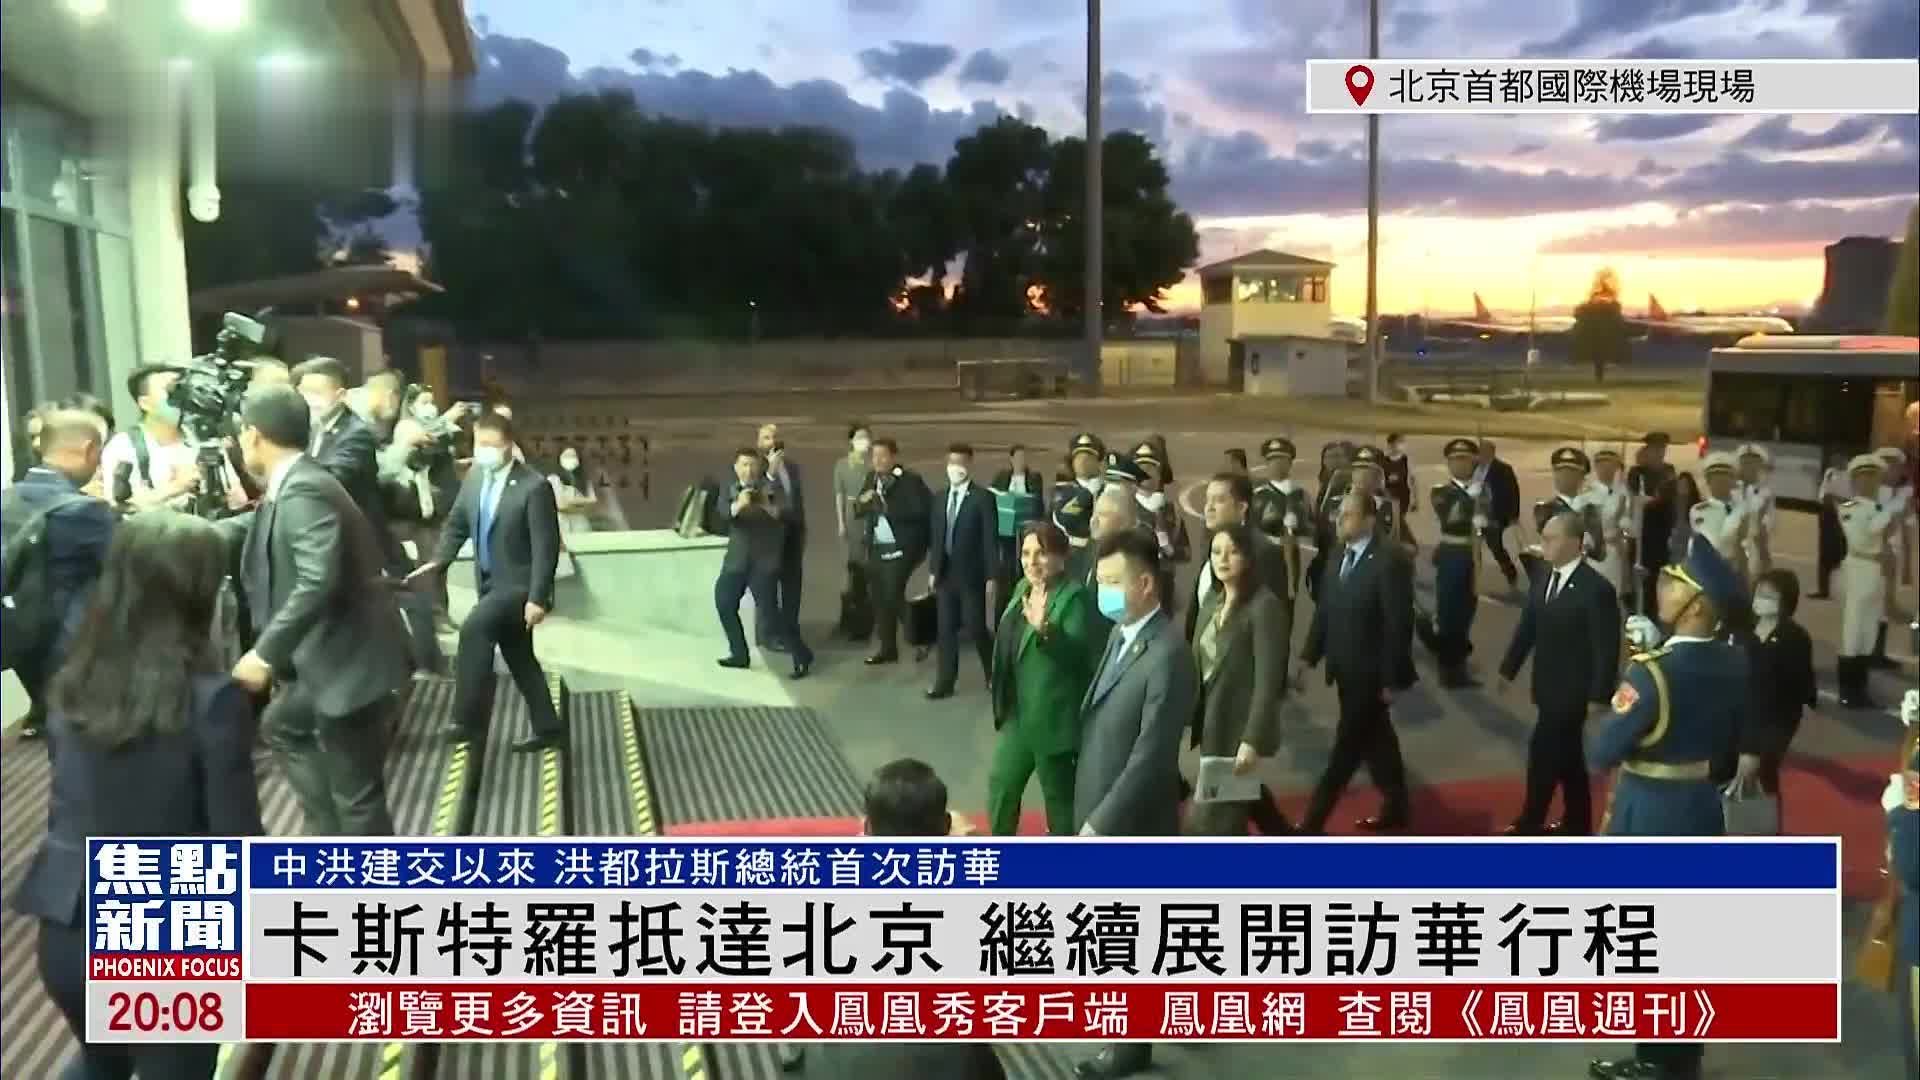 日本前首相安倍晋三将出任自民党细田派会长 - 2021年11月9日, 俄罗斯卫星通讯社